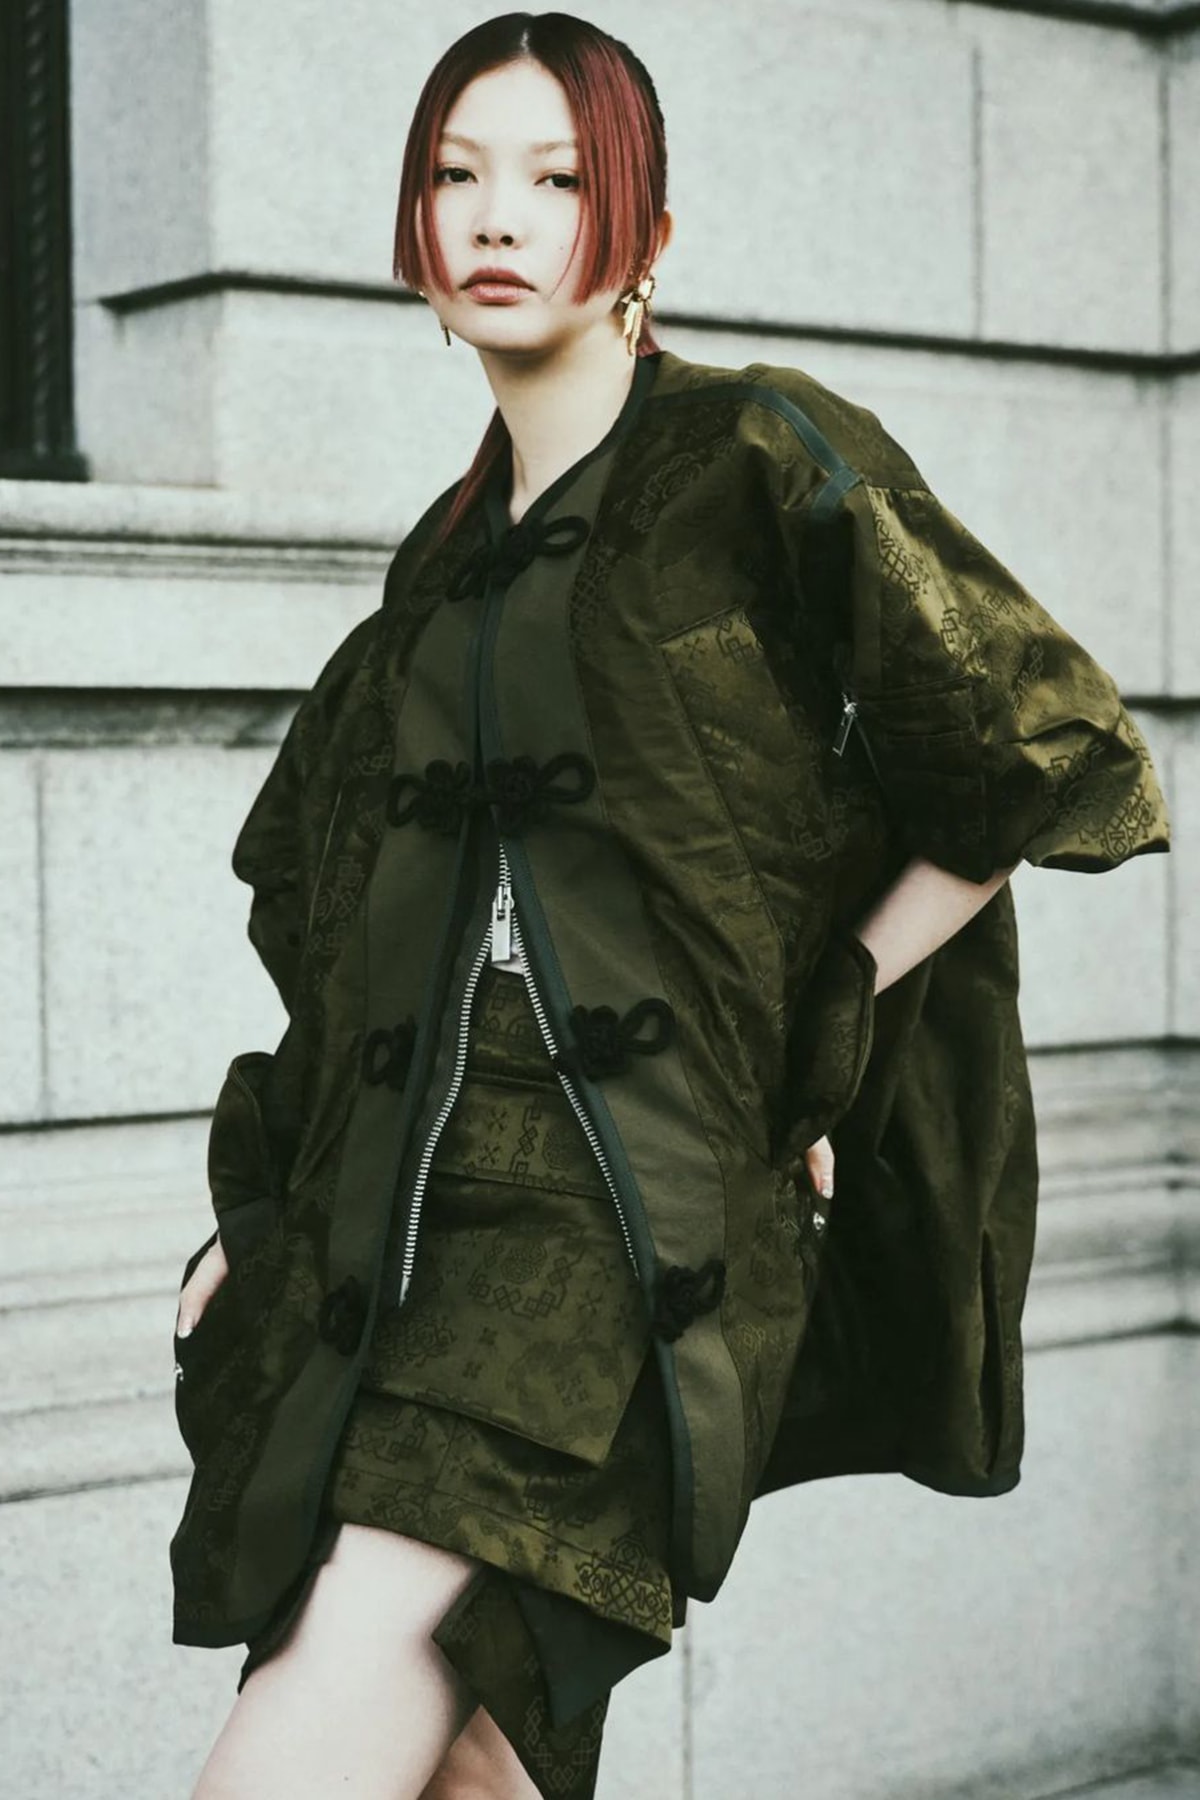 クロット x サカイによるコラボカプセルコレクションがローンチ CLOT and sacai Reunite for SS24 Capsule Fashion